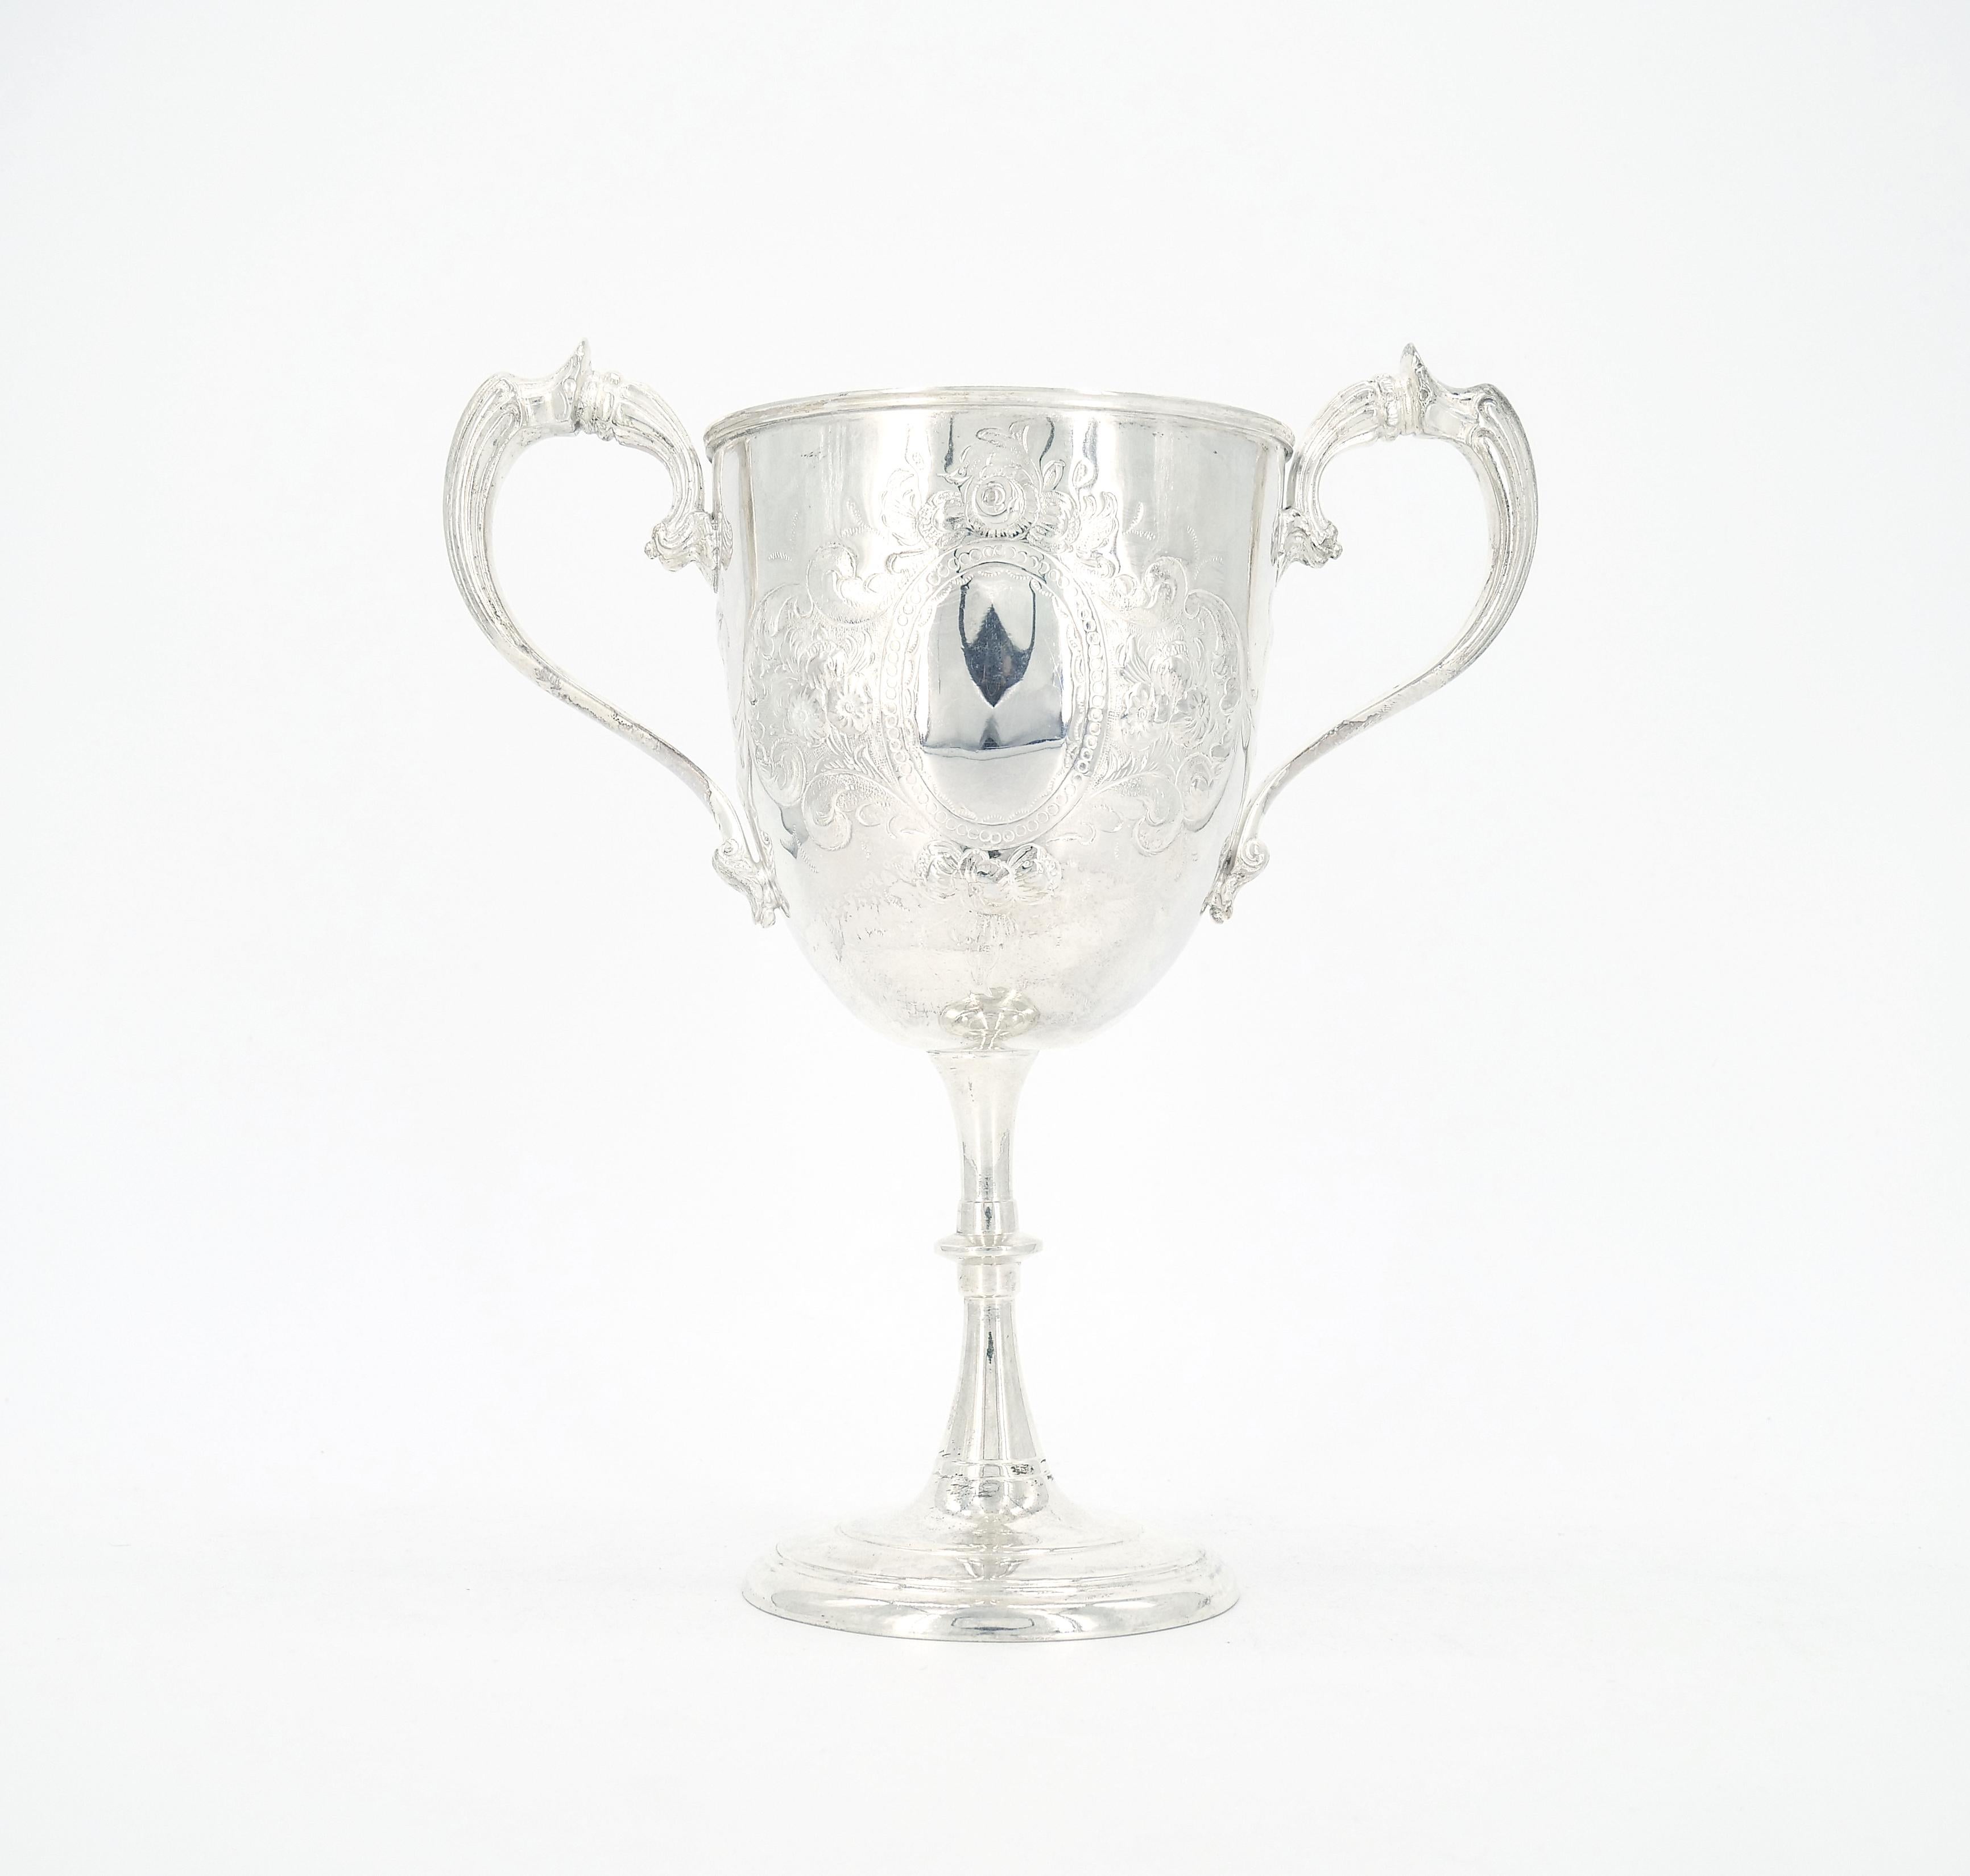 
Enthüllen Sie den Inbegriff von Eleganz mit dieser englischen Sheffield Silber Platte zwei Griff Trophäe Tasse dekorative Vase / Urne. Dieses bemerkenswerte, mit viel Liebe zum Detail gefertigte Stück eignet sich hervorragend als dekorative Vase